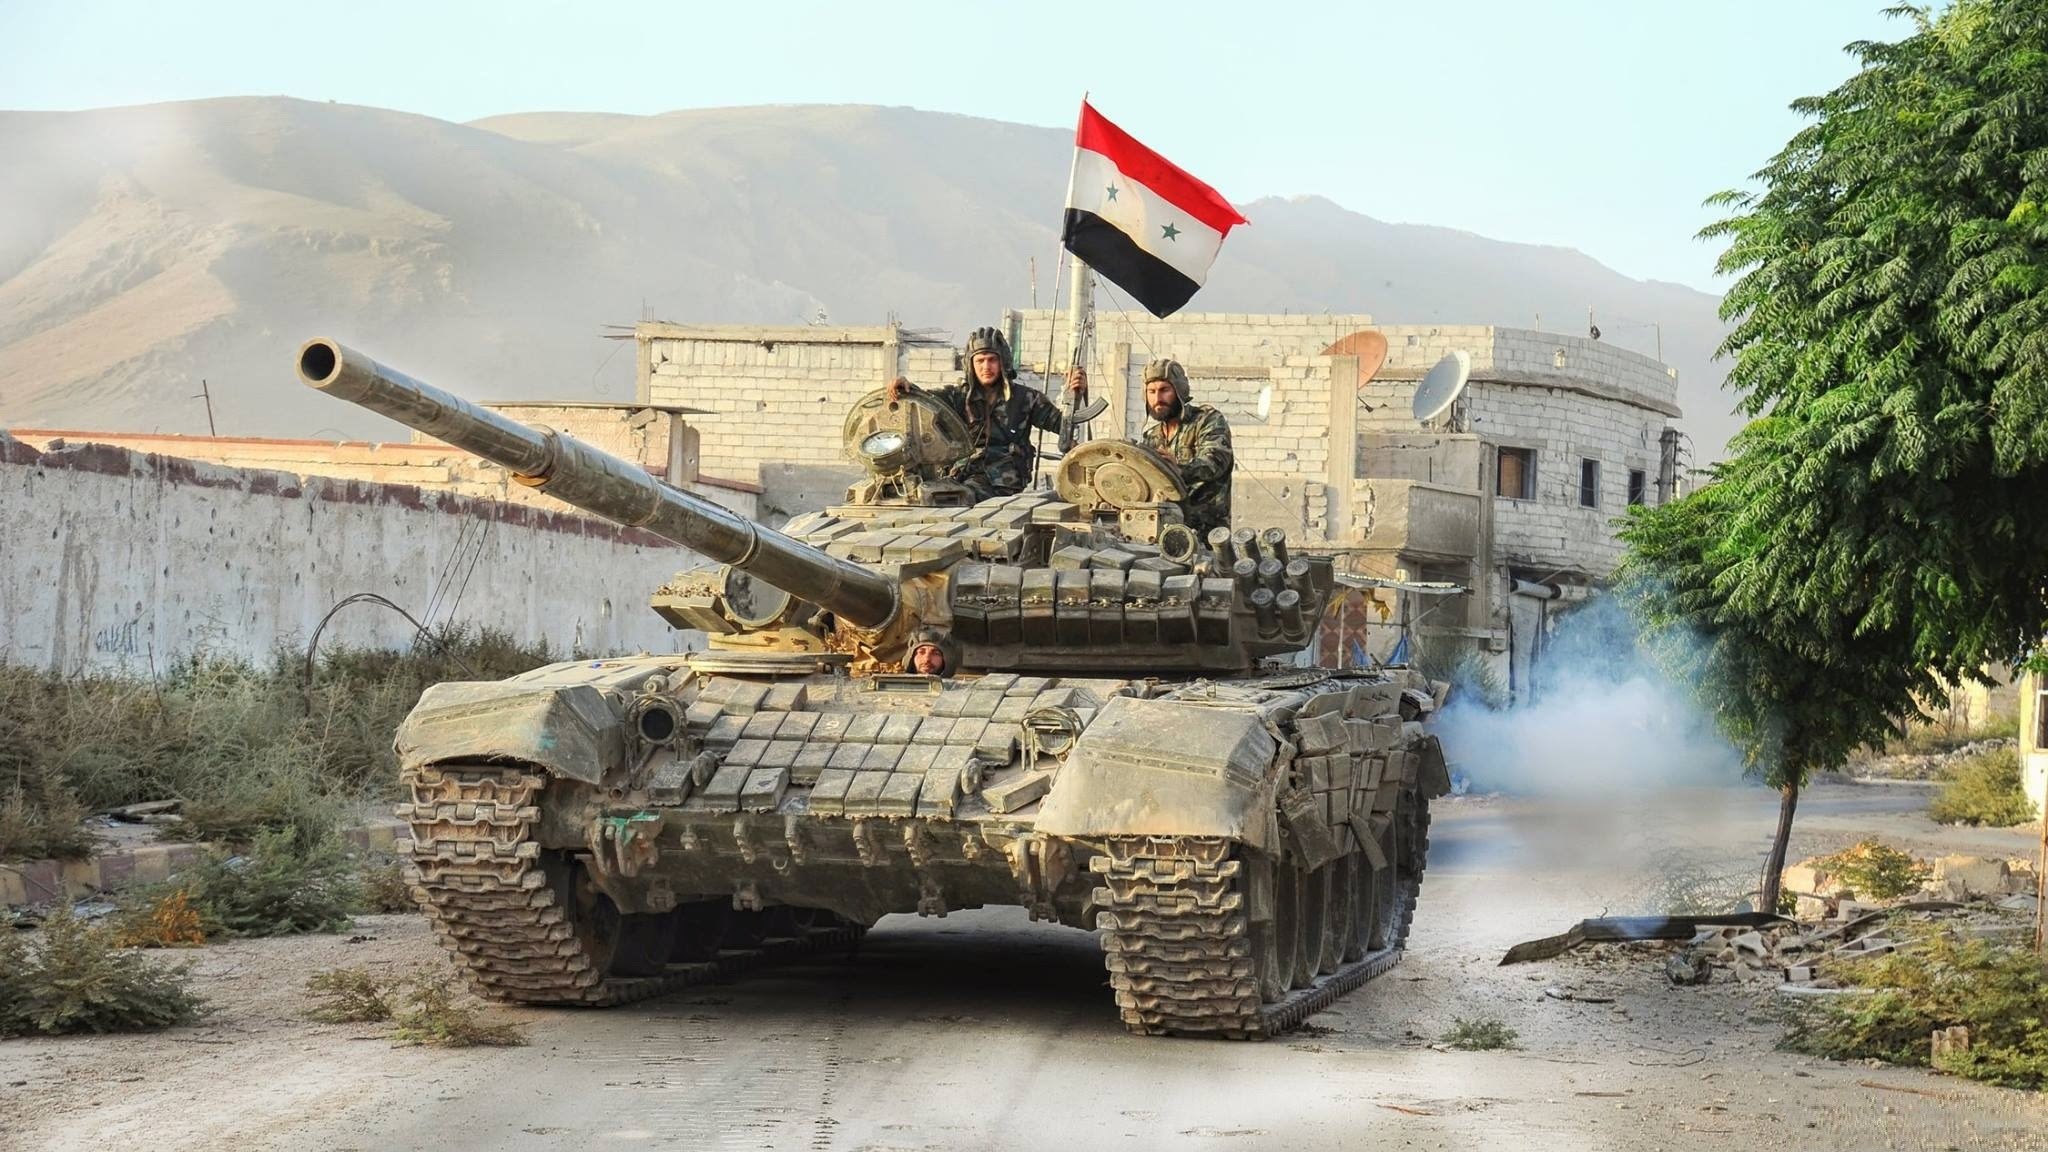 آخرین و ضعیت ارتش سوریه در شمال  "حماء"/"معان" و "معردس" در کنترل تایگرها + نقشه و جزییات